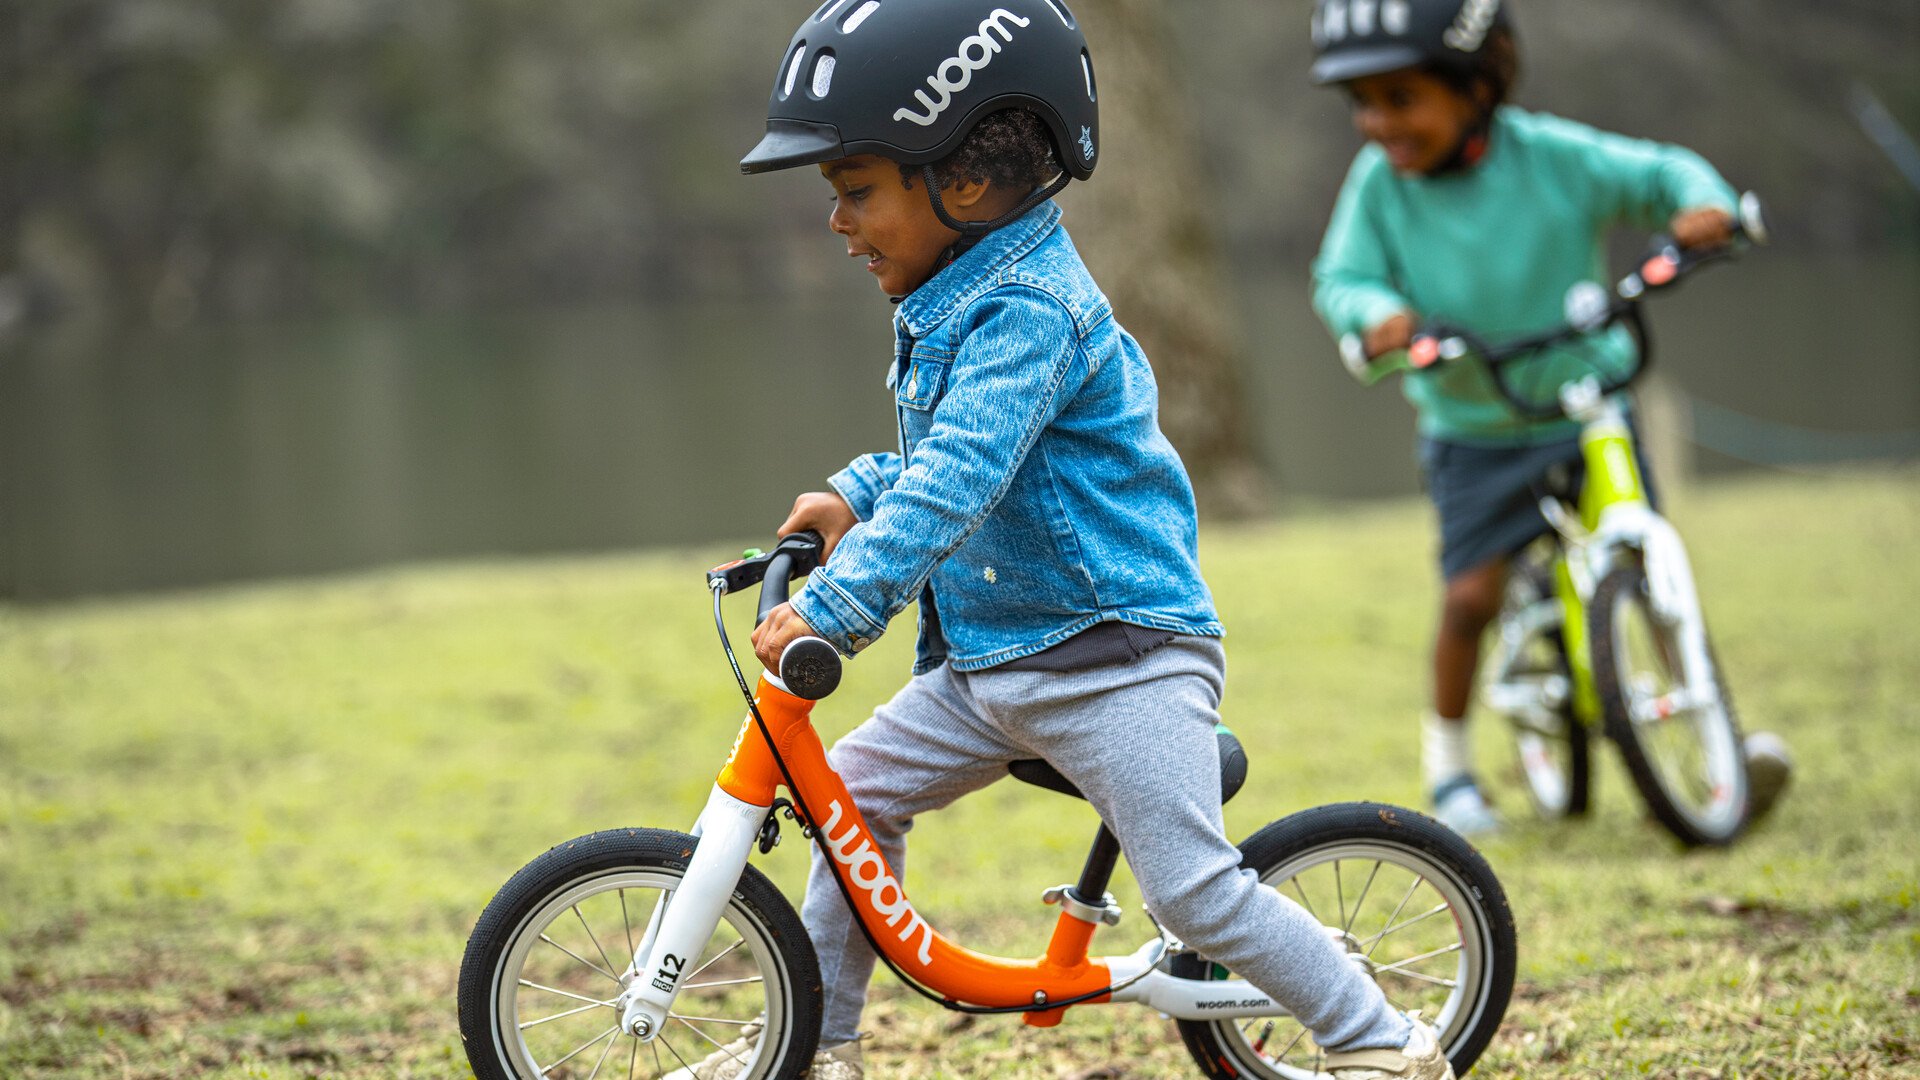 Un enfant sur sa draisienne rouge et un autre sur son vélo vert roulent dans un champ, chacun muni d’un casque noir.